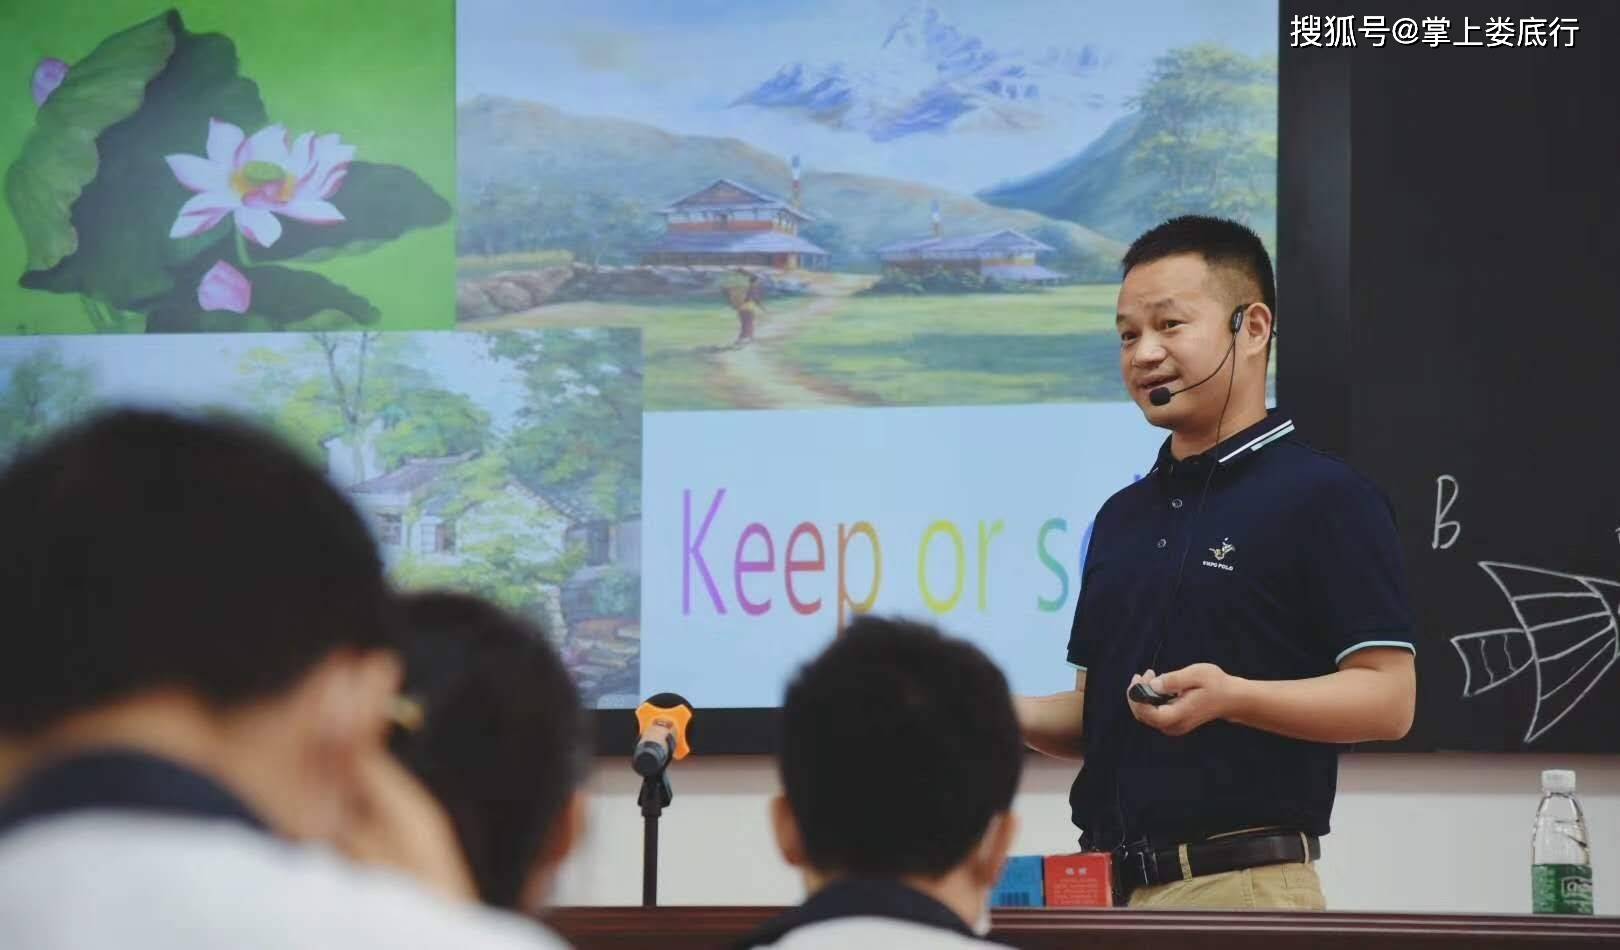 娄底二中校长李永福代表学校致欢迎辞,他希望全区广大教师加强学习